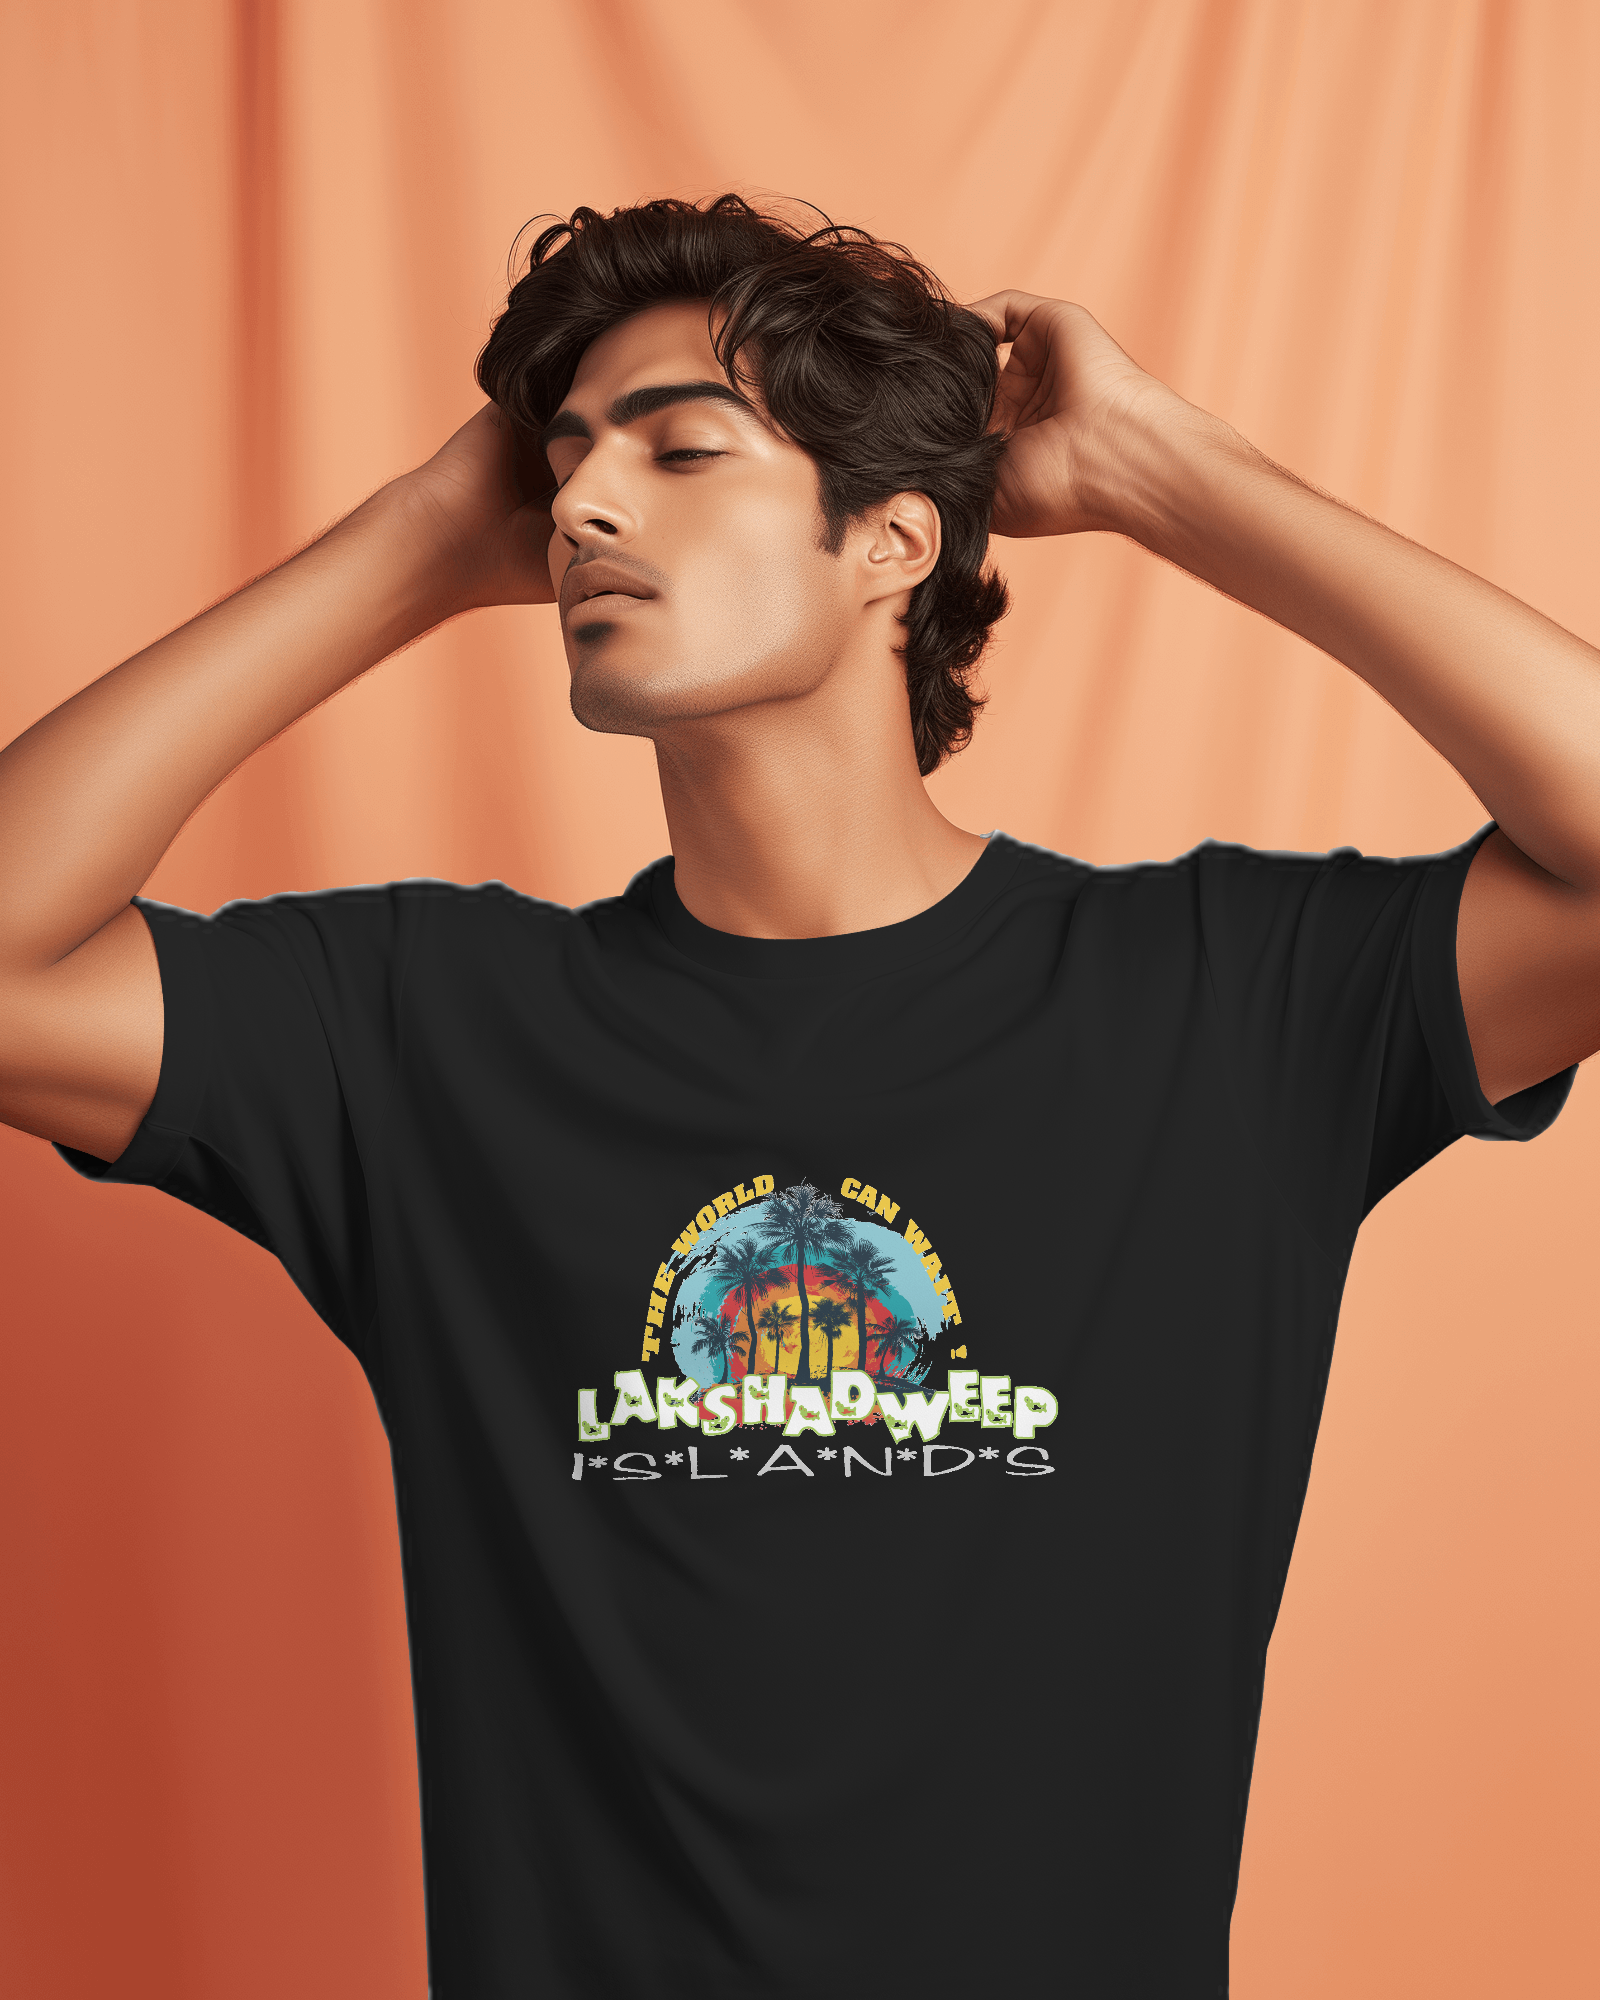 Printed Tshirt for lakshadweep tourism | Bratma